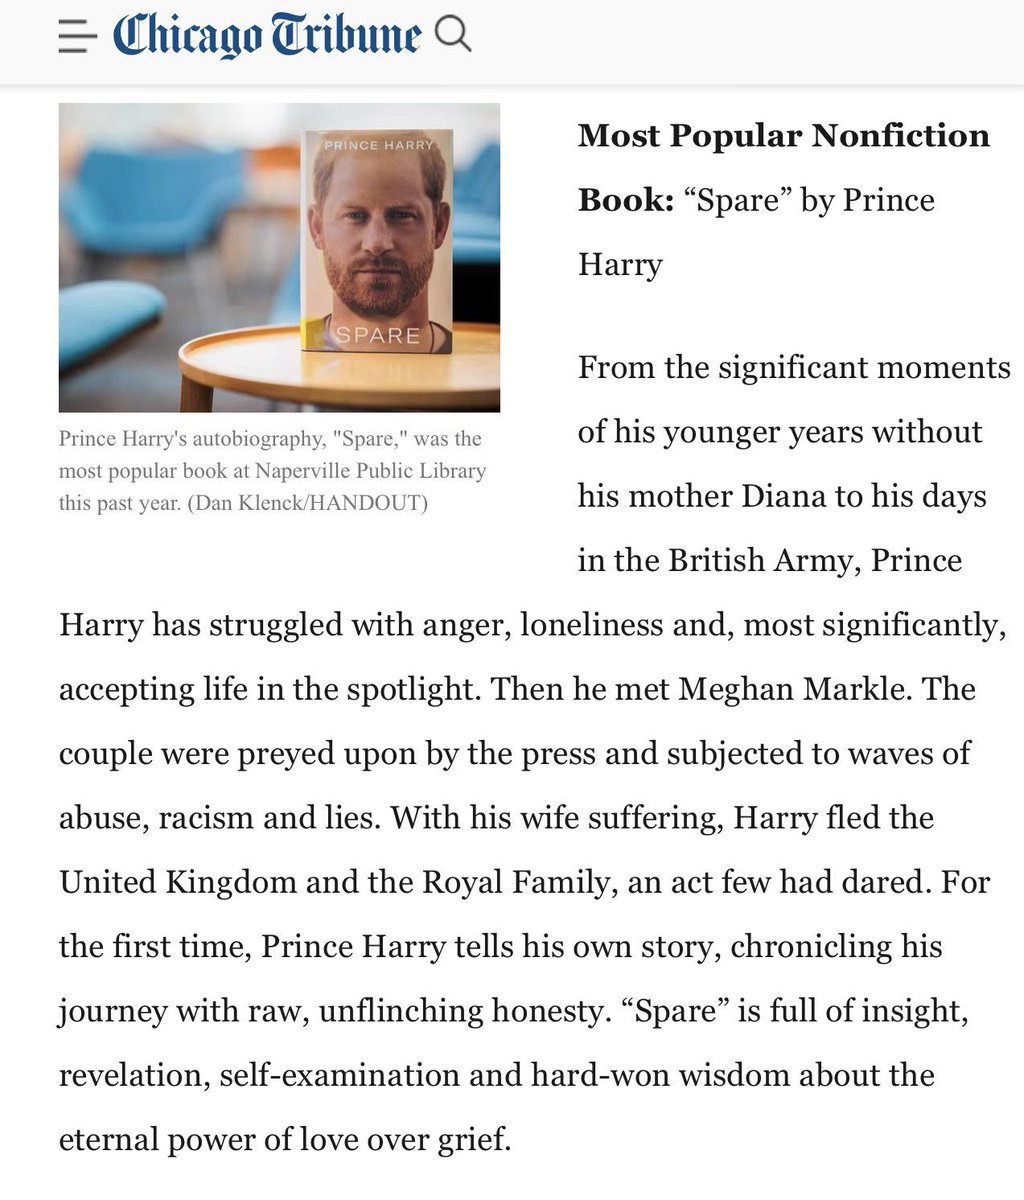 #Spare  #SparebyPrinceHarry 
#PrinceHarryWon